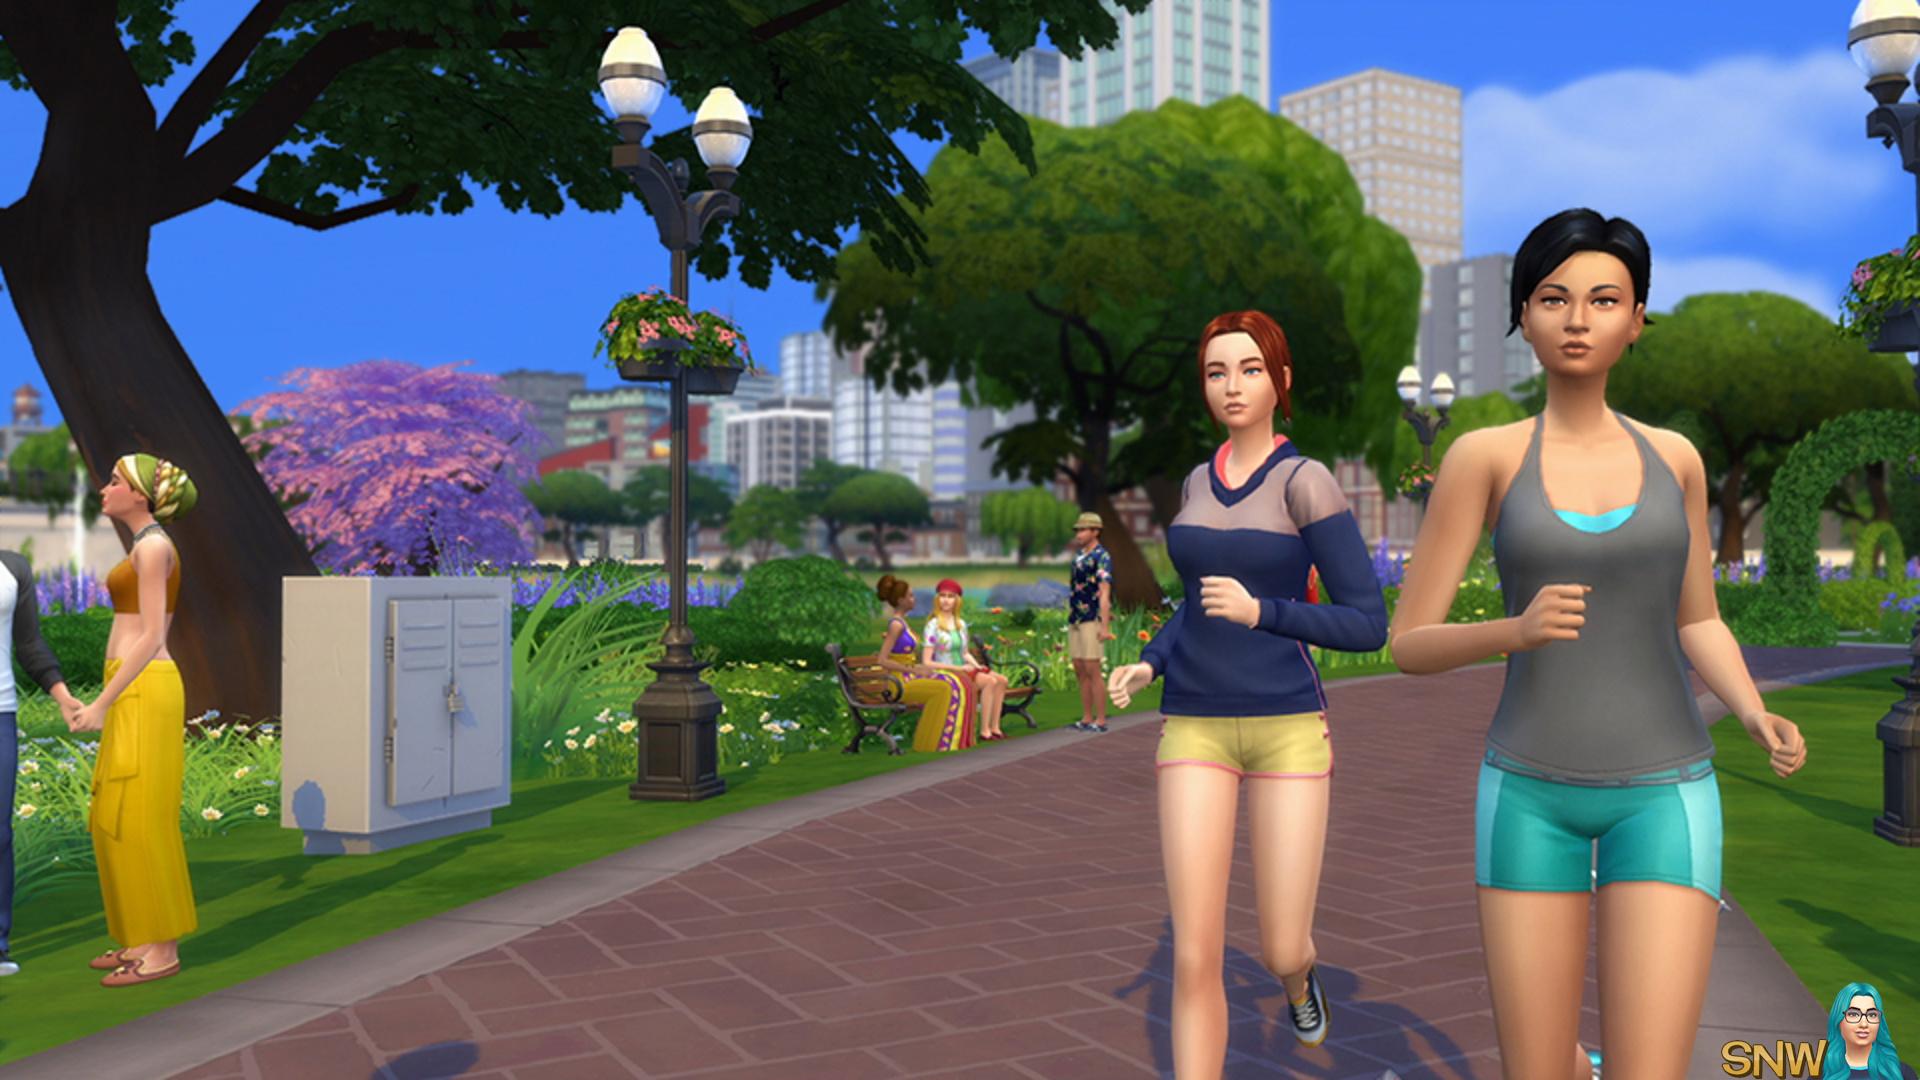 Les personnages des Sims 4 partent faire du jogging